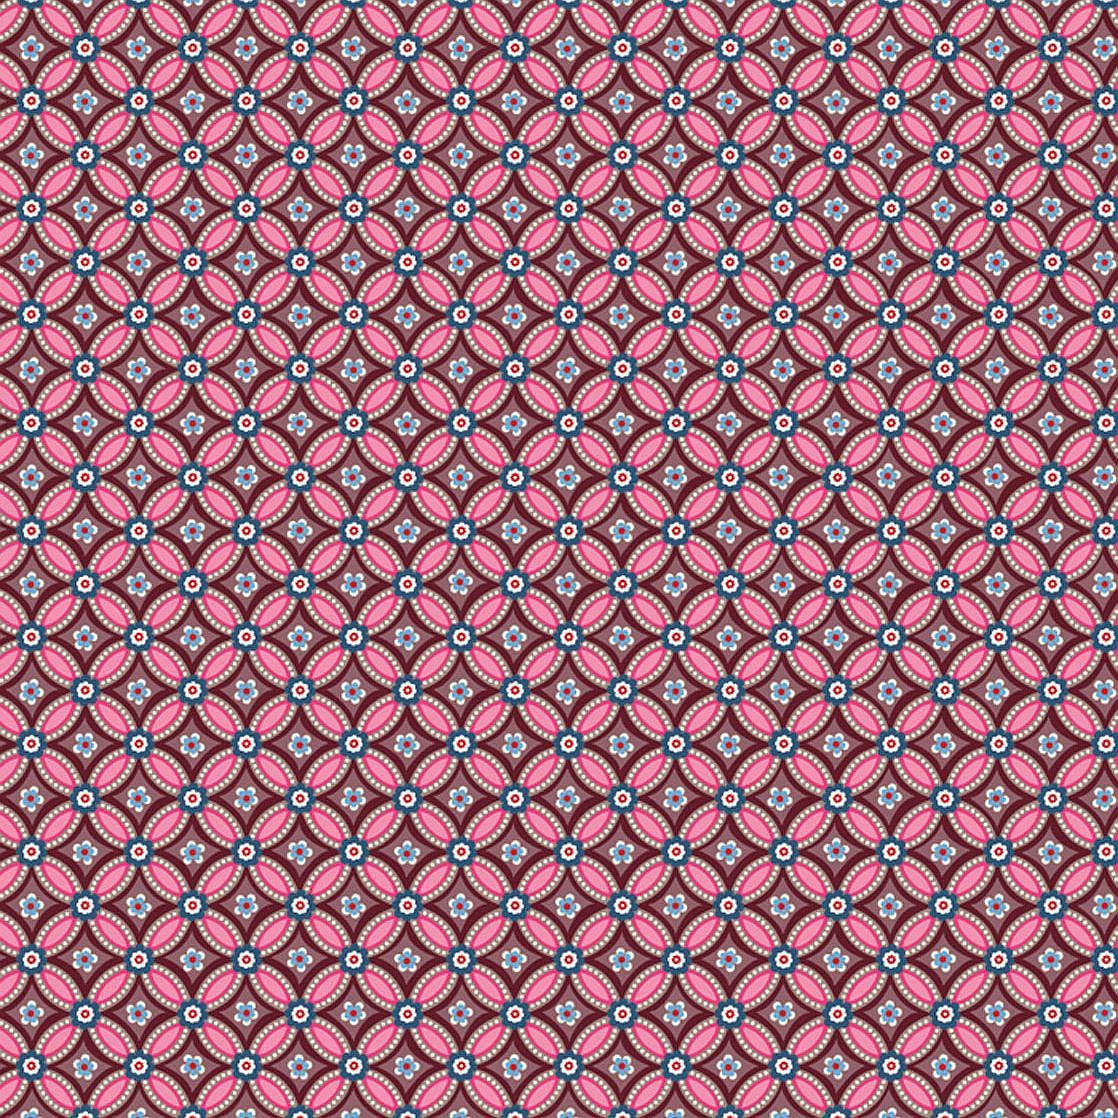 Eijffinger Pip geometriai mintás pink-barna színű orientális stílusú tapéta